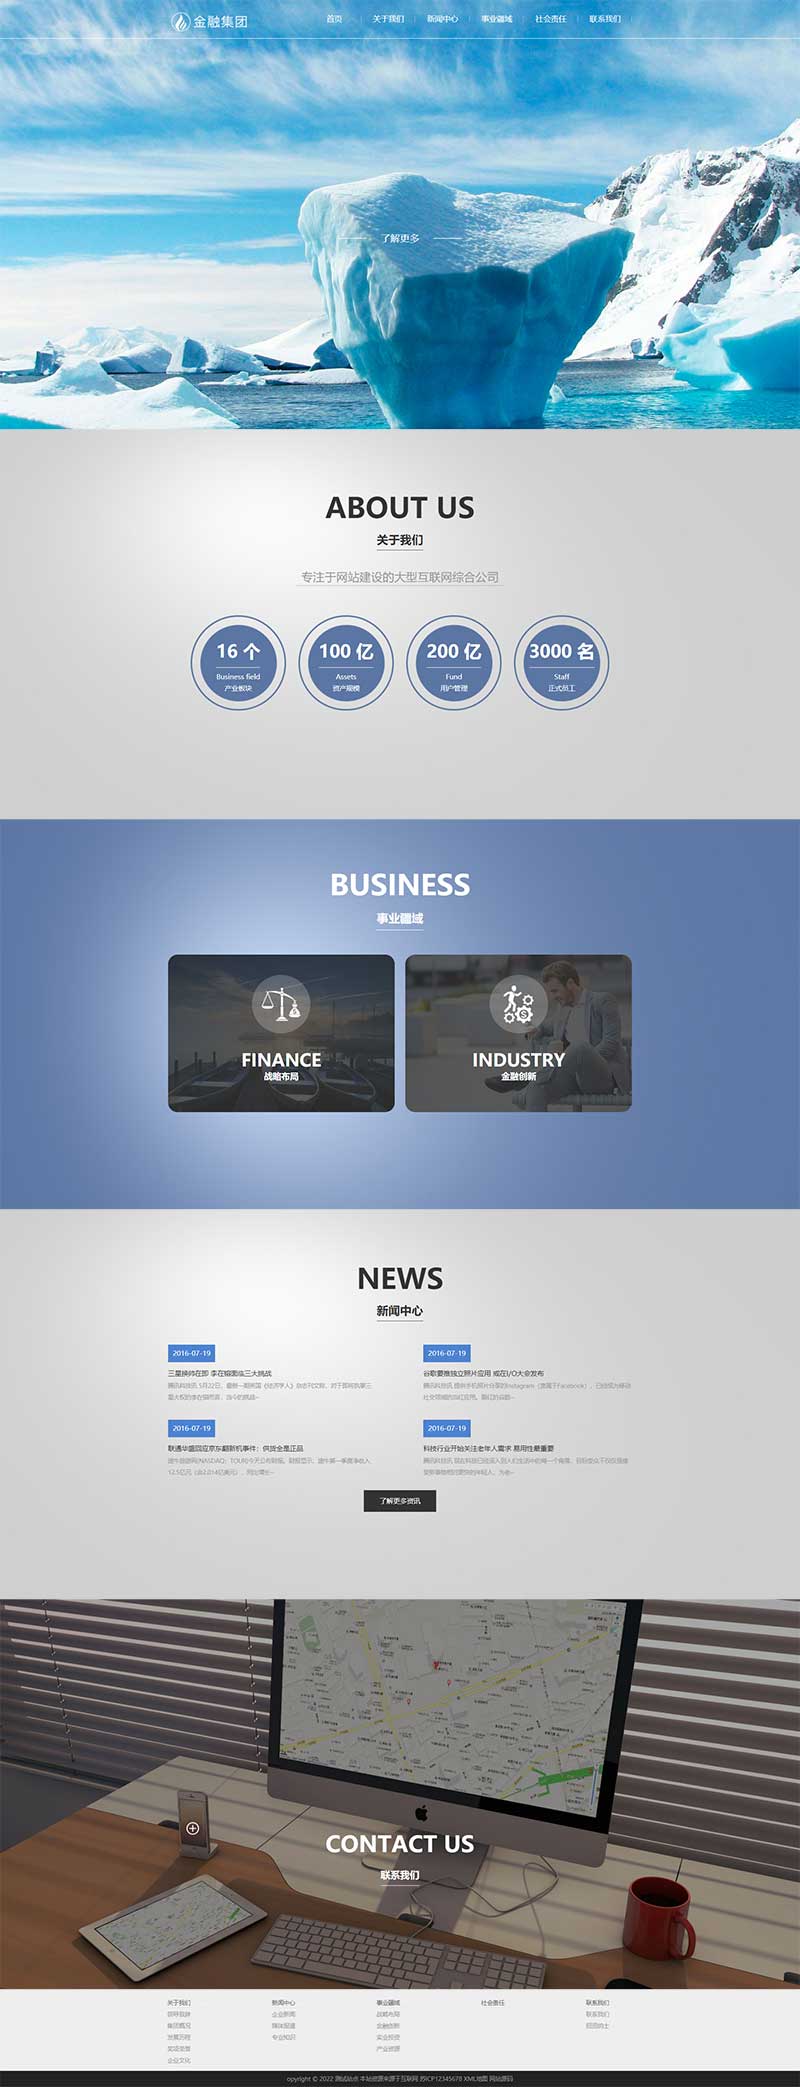 (自适应移动端)html5响应式蓝色大气简洁企业集团网站电脑端模板展示图片